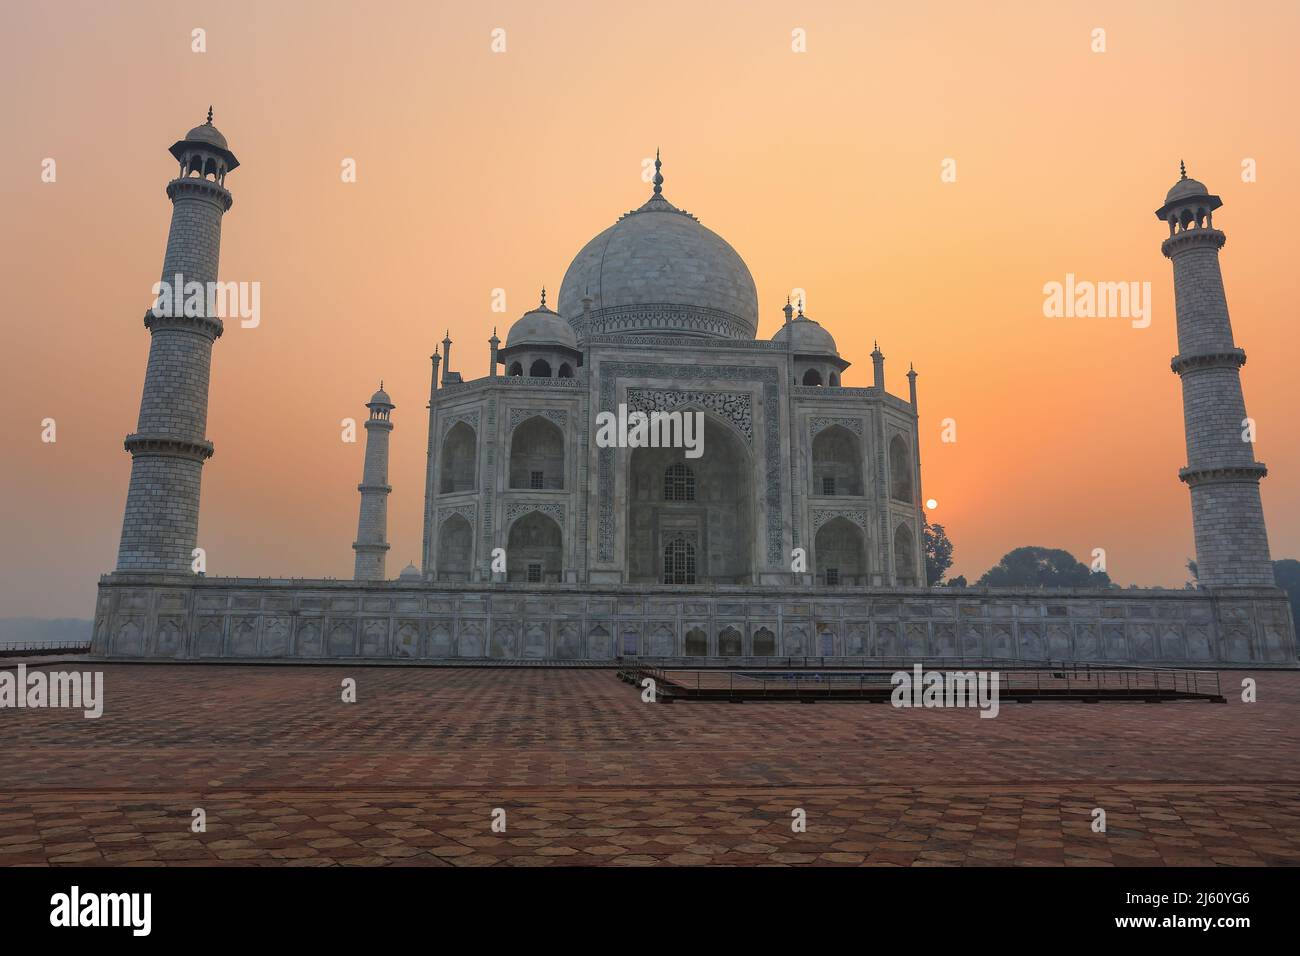 Taj Mahal di sunrise, Agra, Uttar Pradesh, India. Taj Mahal è stato designato come un Sito Patrimonio Mondiale dell'UNESCO nel 1983. Foto Stock